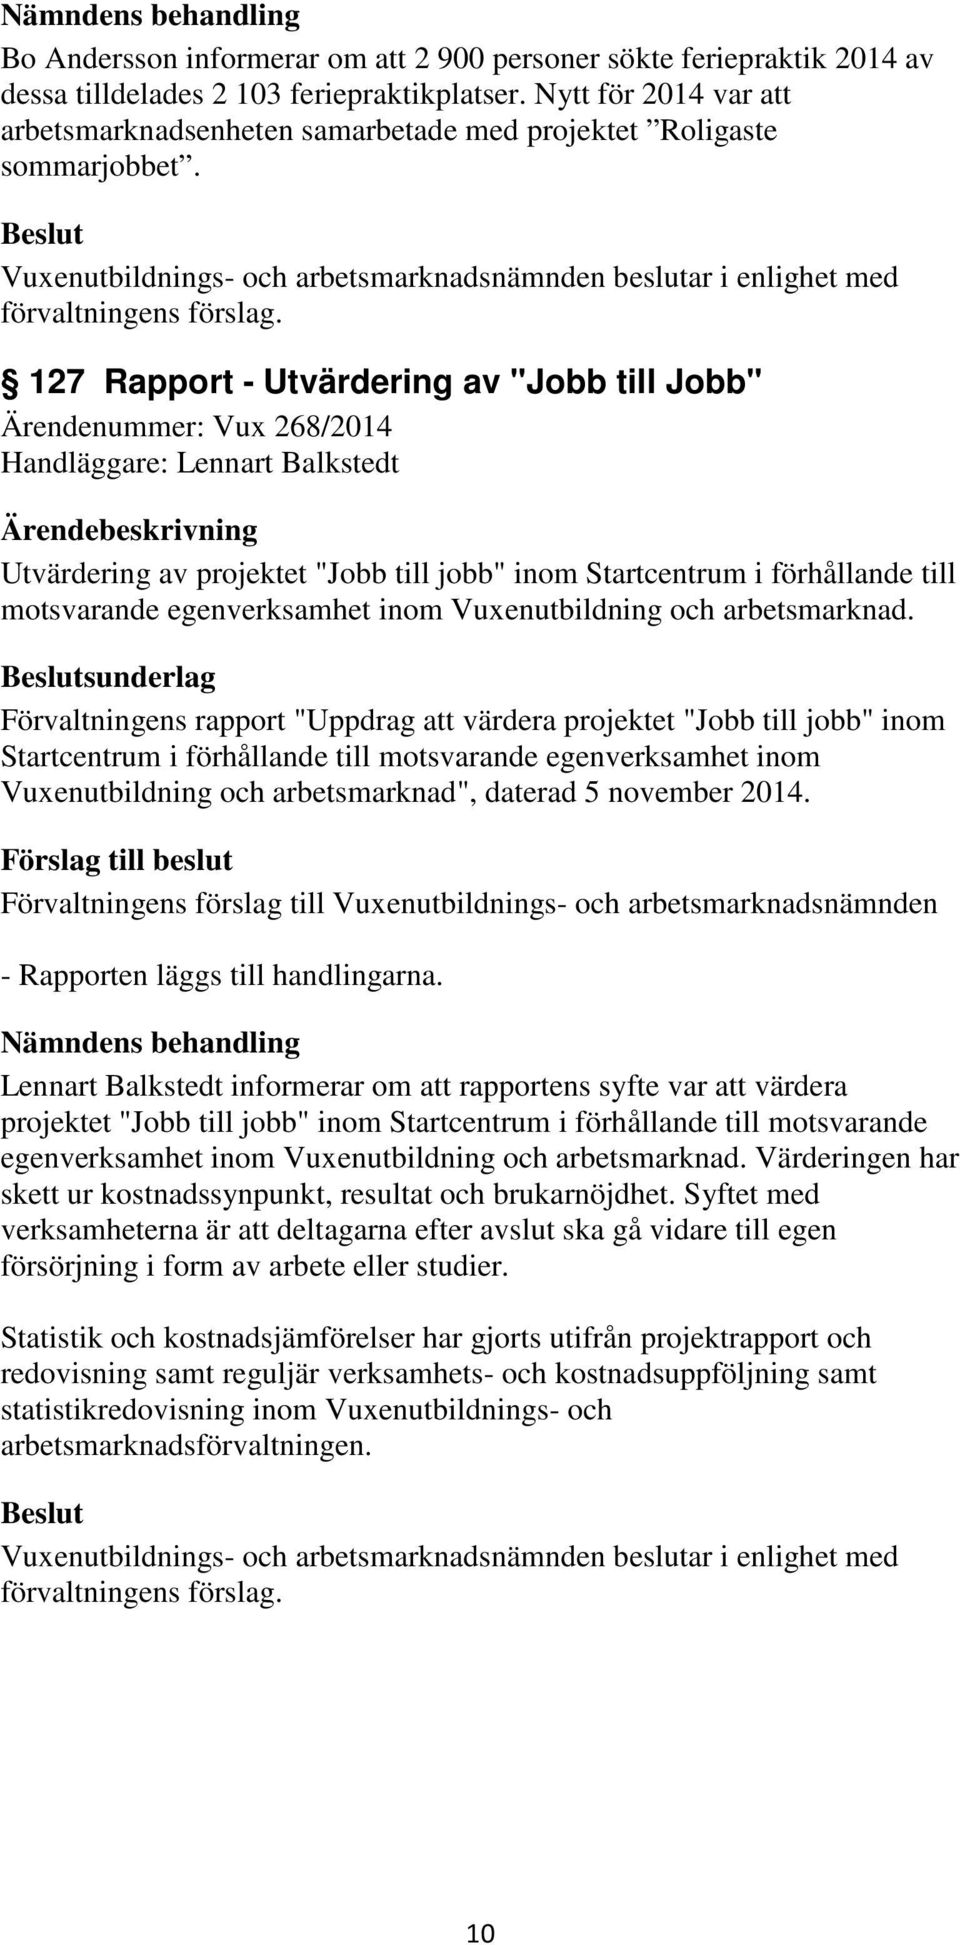 127 Rapport - Utvärdering av "Jobb till Jobb" Ärendenummer: Vux 268/2014 Handläggare: Lennart Balkstedt Utvärdering av projektet "Jobb till jobb" inom Startcentrum i förhållande till motsvarande